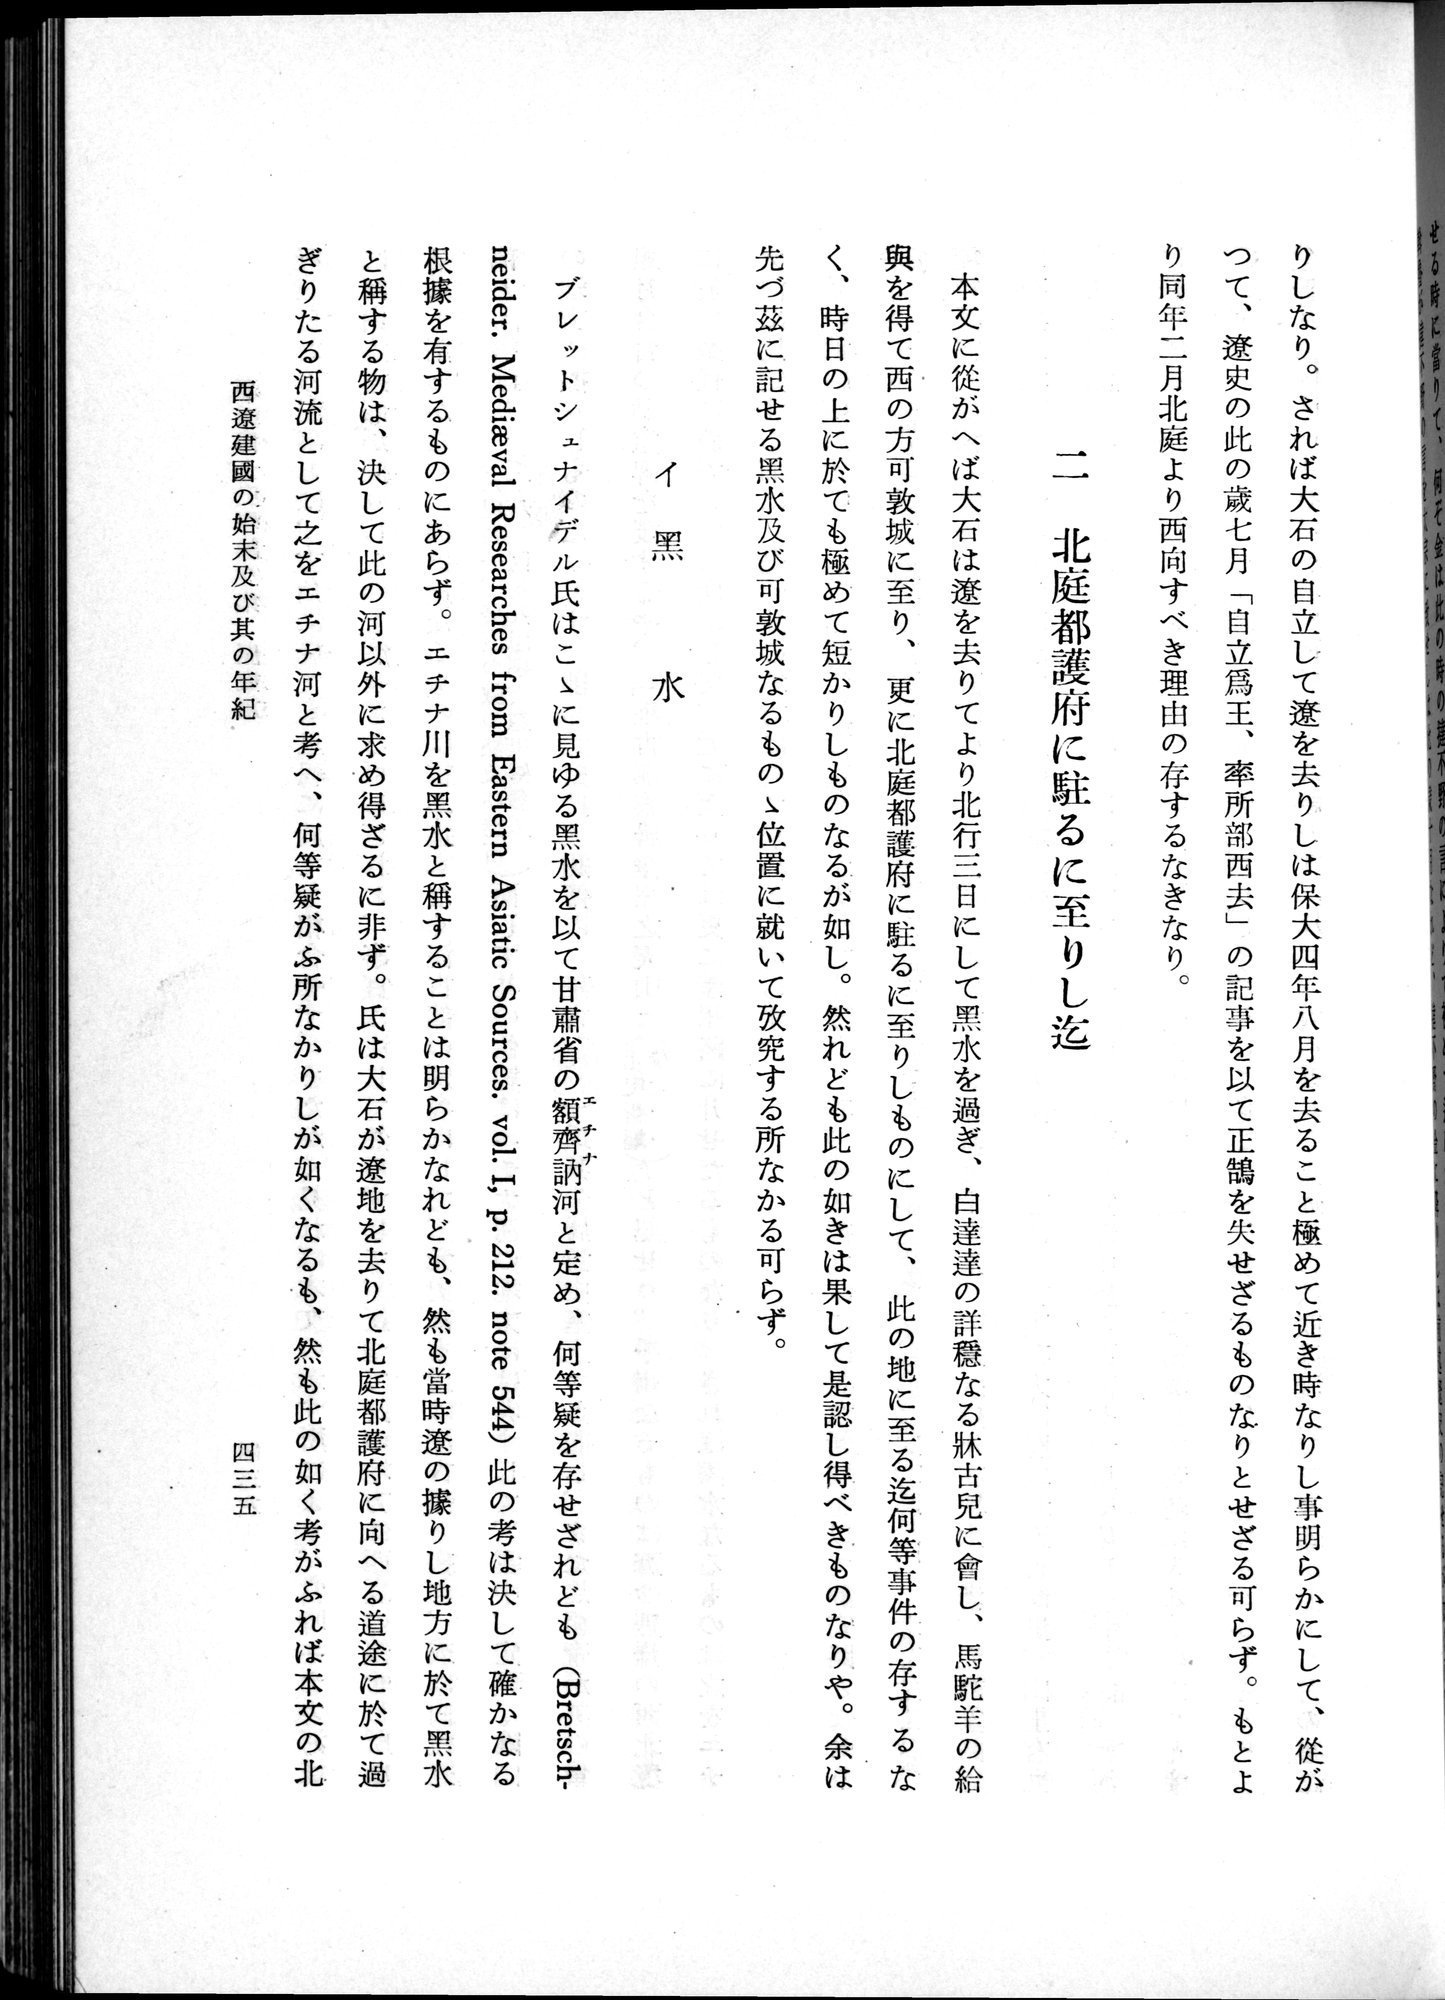 羽田博士史学論文集 : vol.1 / Page 473 (Grayscale High Resolution Image)